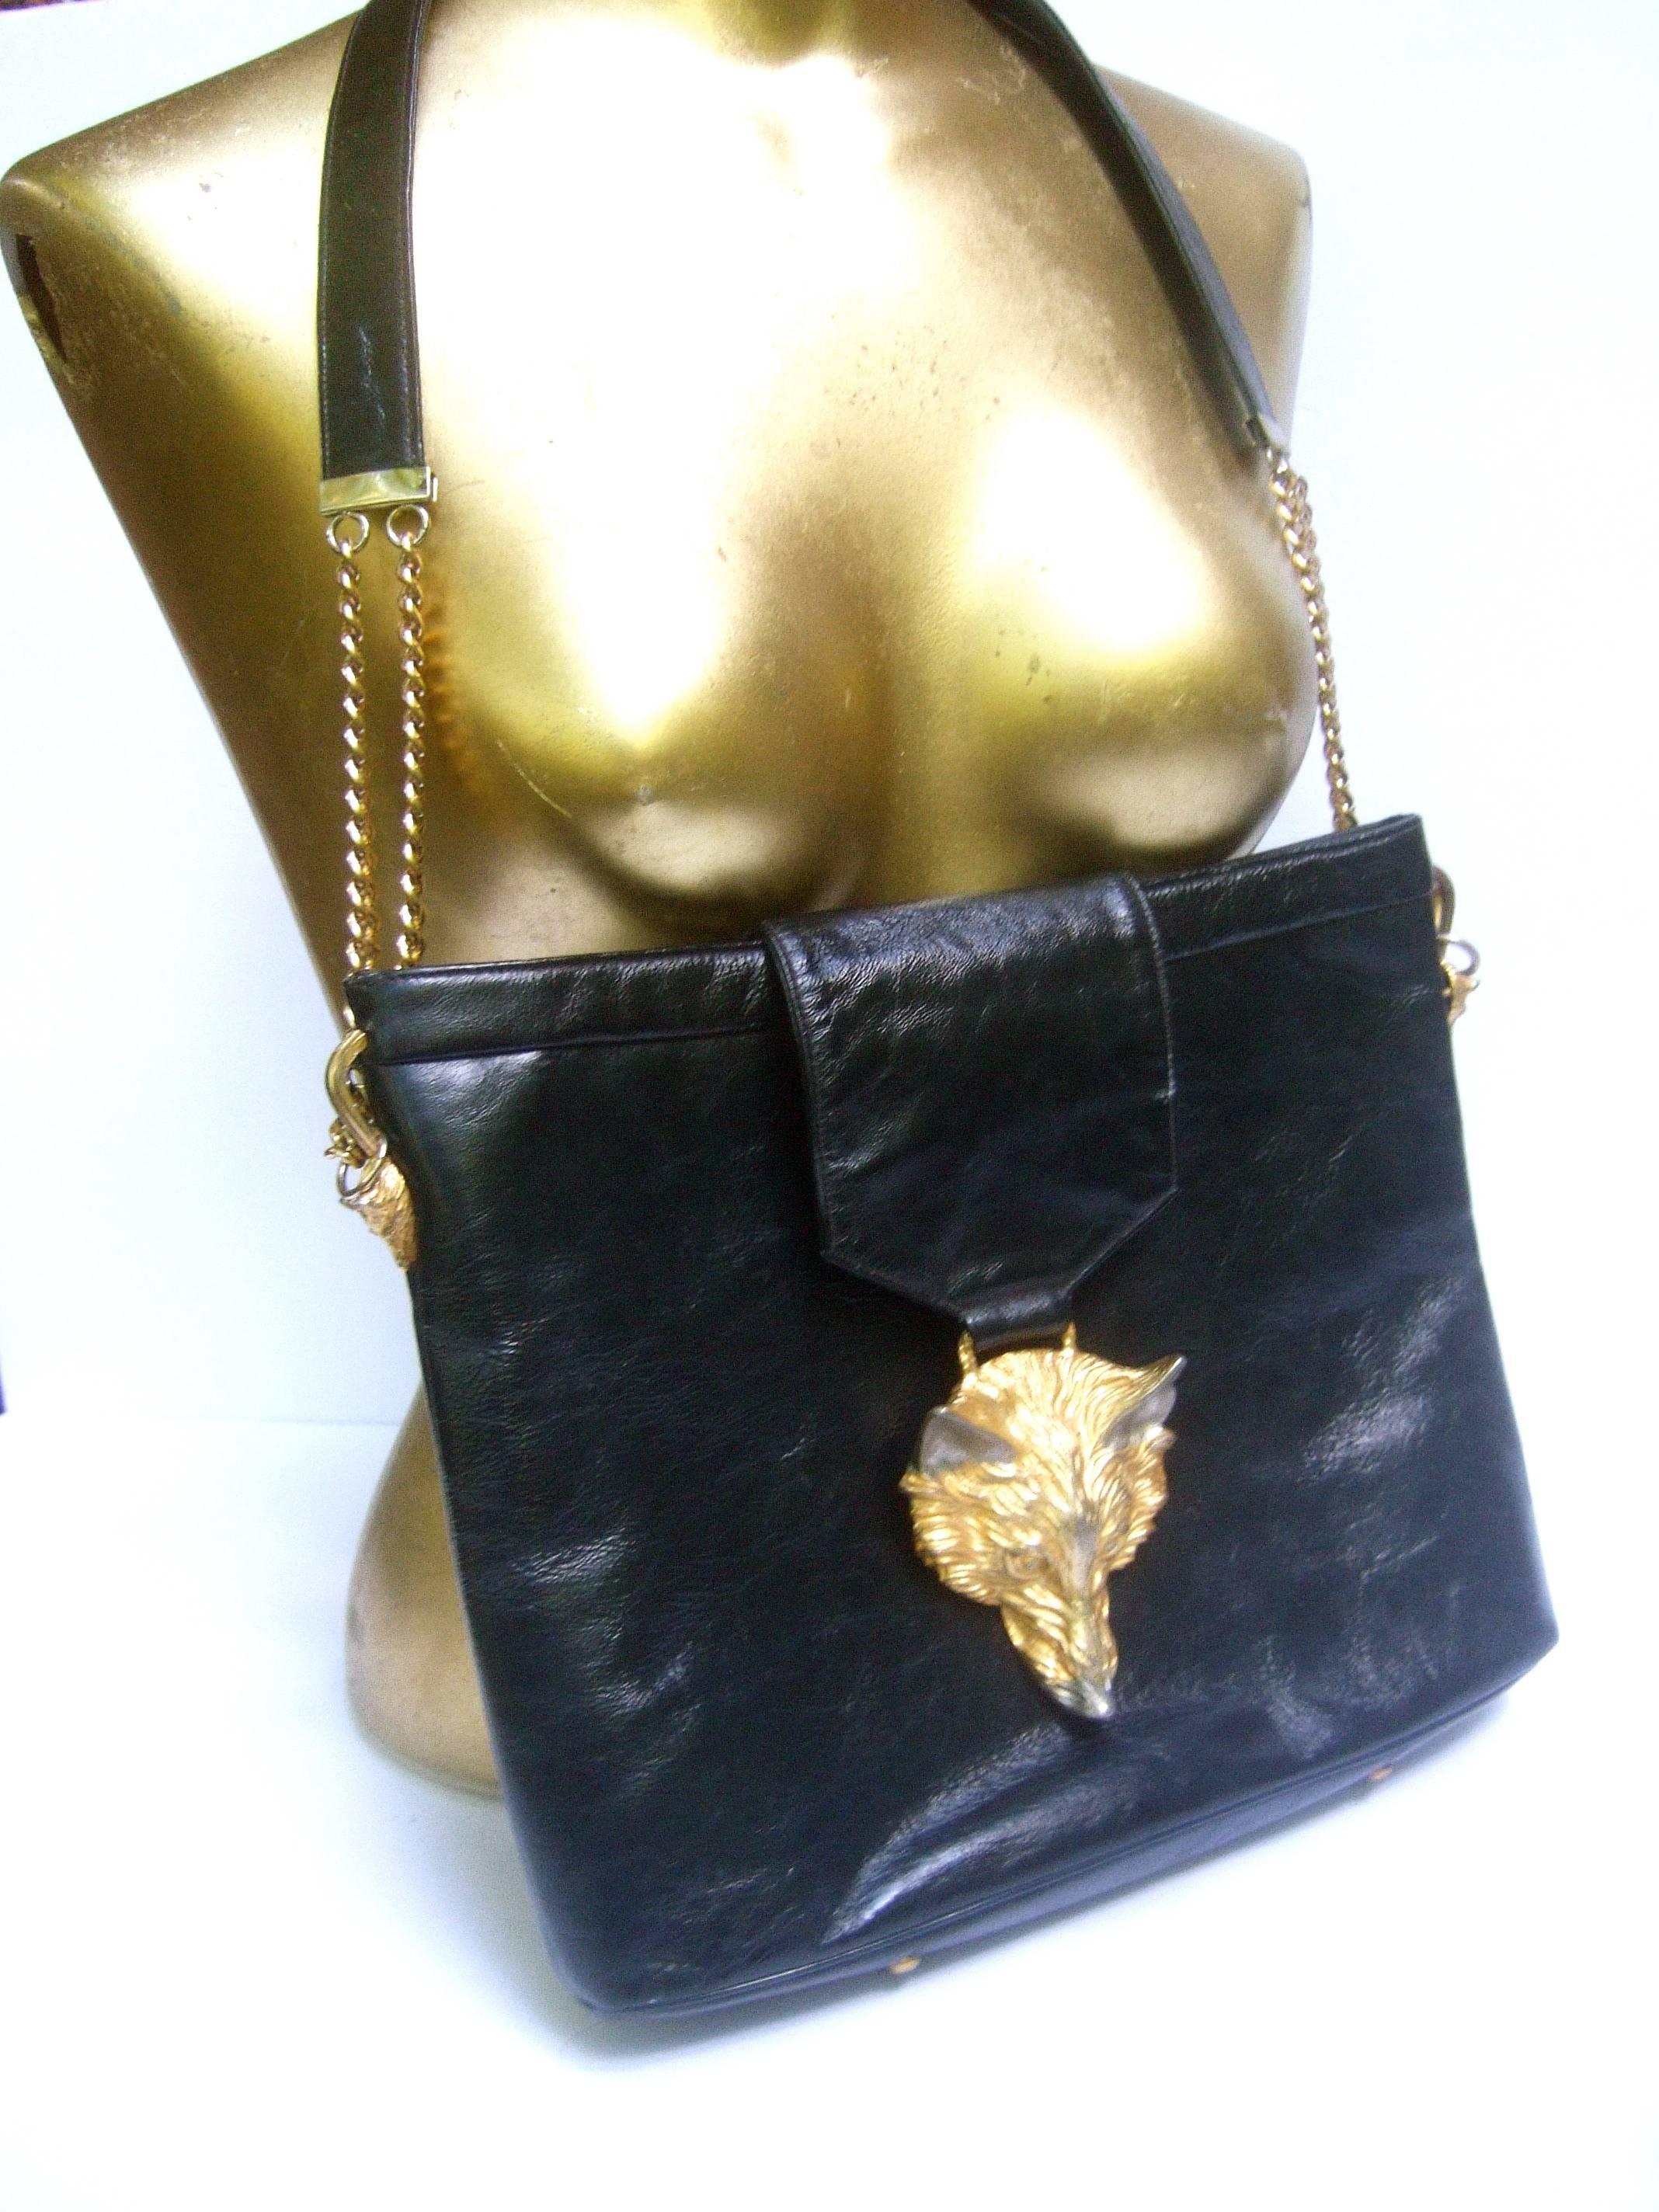 Women's Avant Garde Fox Emblem Black Leather Handbag Designed by Harry Rosenfeld c 1970s